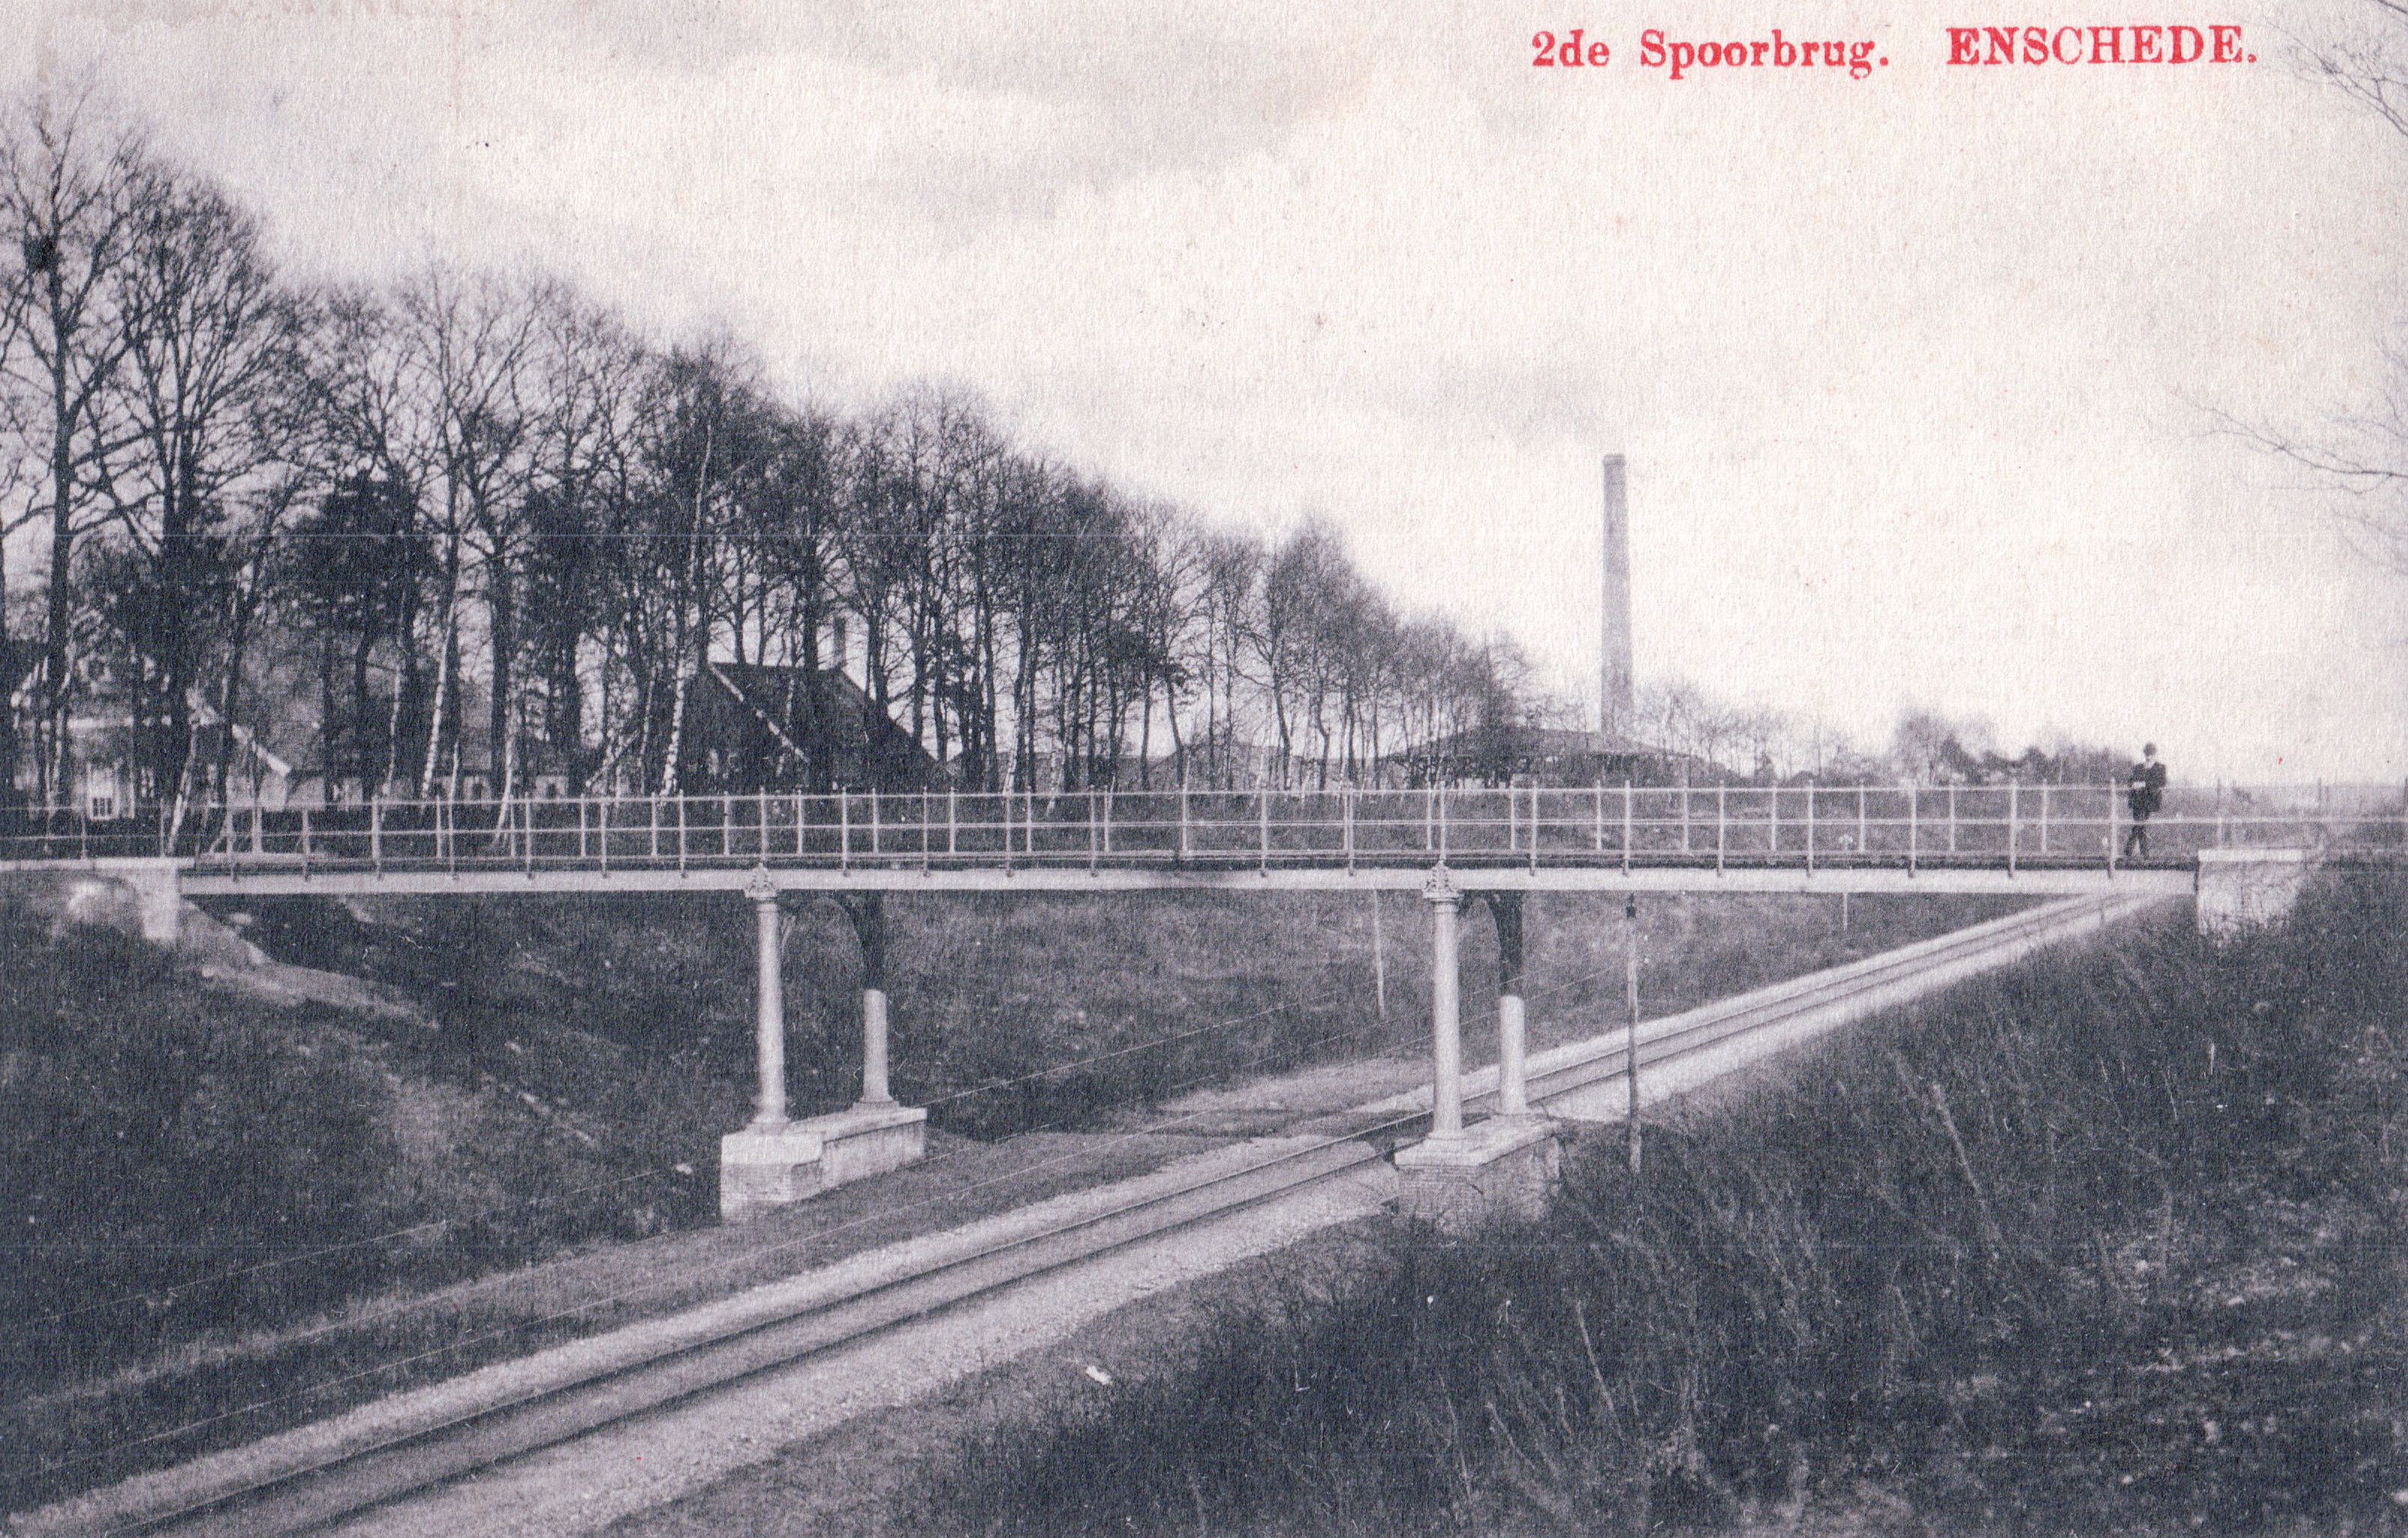 Brug-spoorlijn-1909-f0d5d0db.jpg